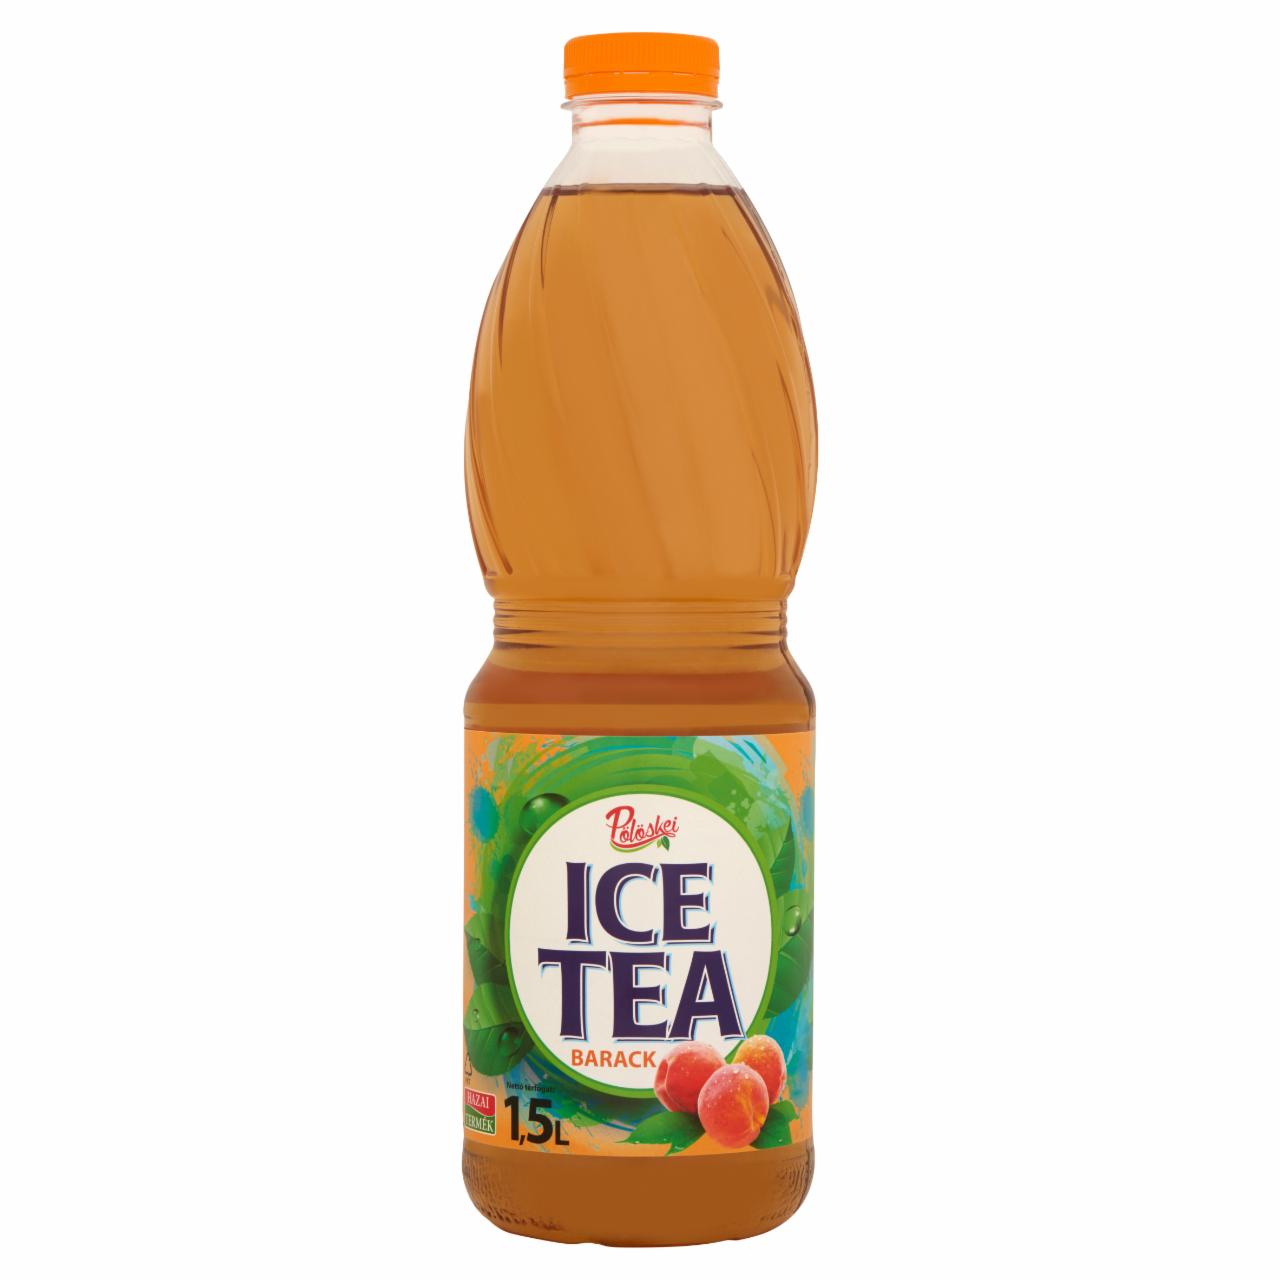 Képek - Pölöskei barack ice tea cukorral és édesítőszerekkel 1,5 l